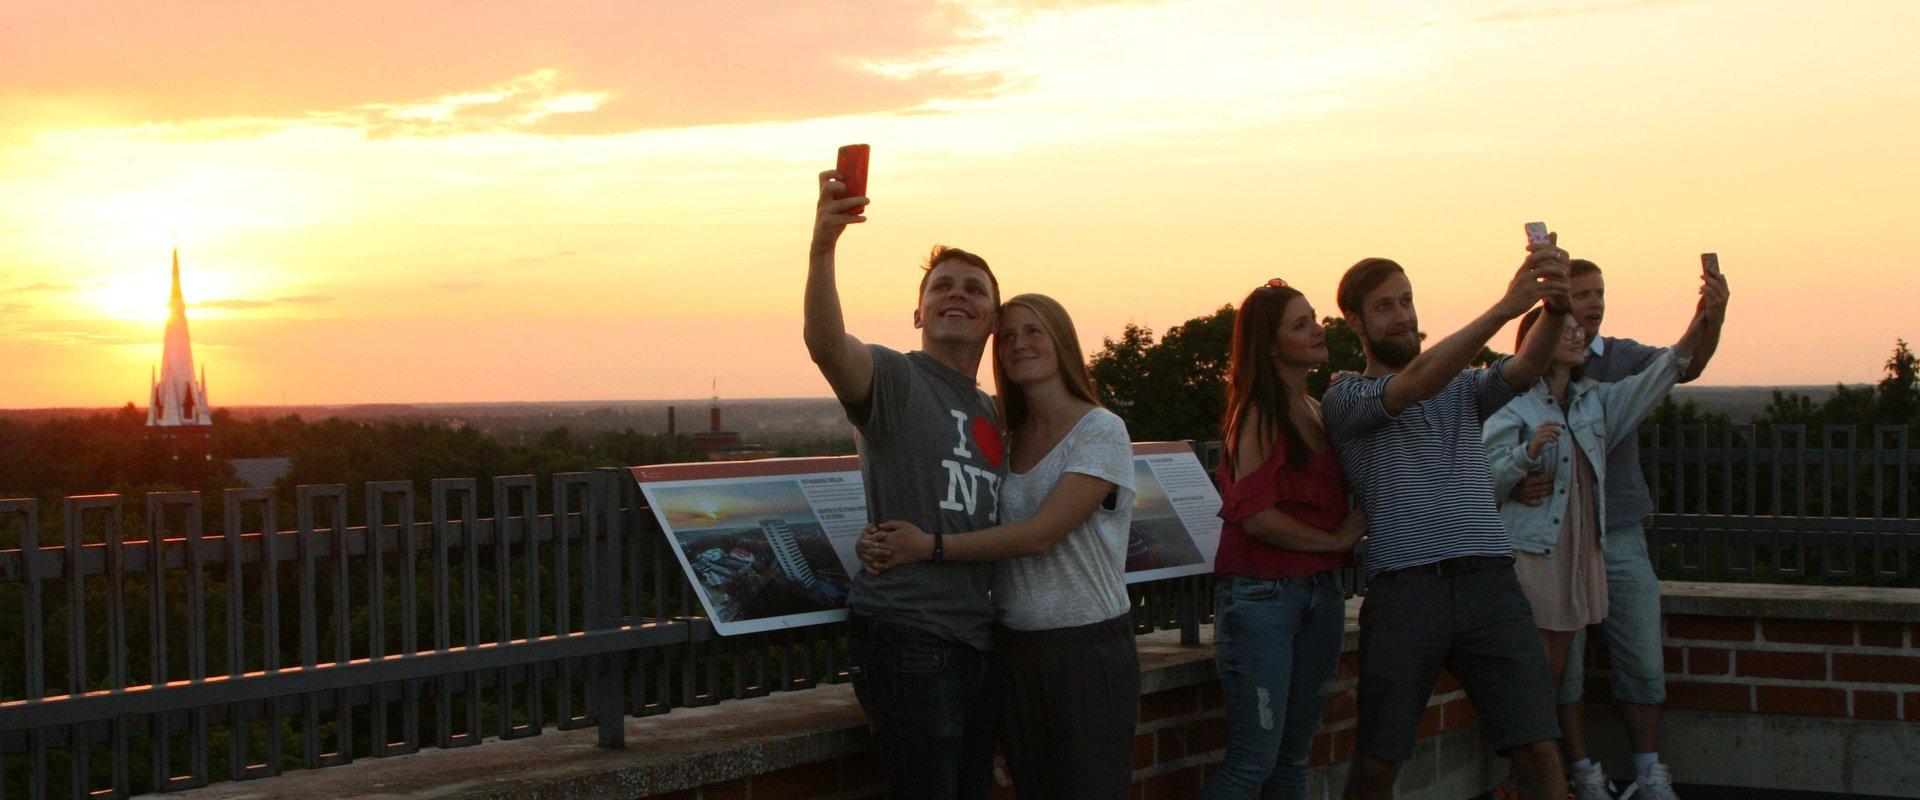 Tartu Universitātes muzejs, doma baznīcas torņi,
jaunieši saulrietā uzņem selfijus
